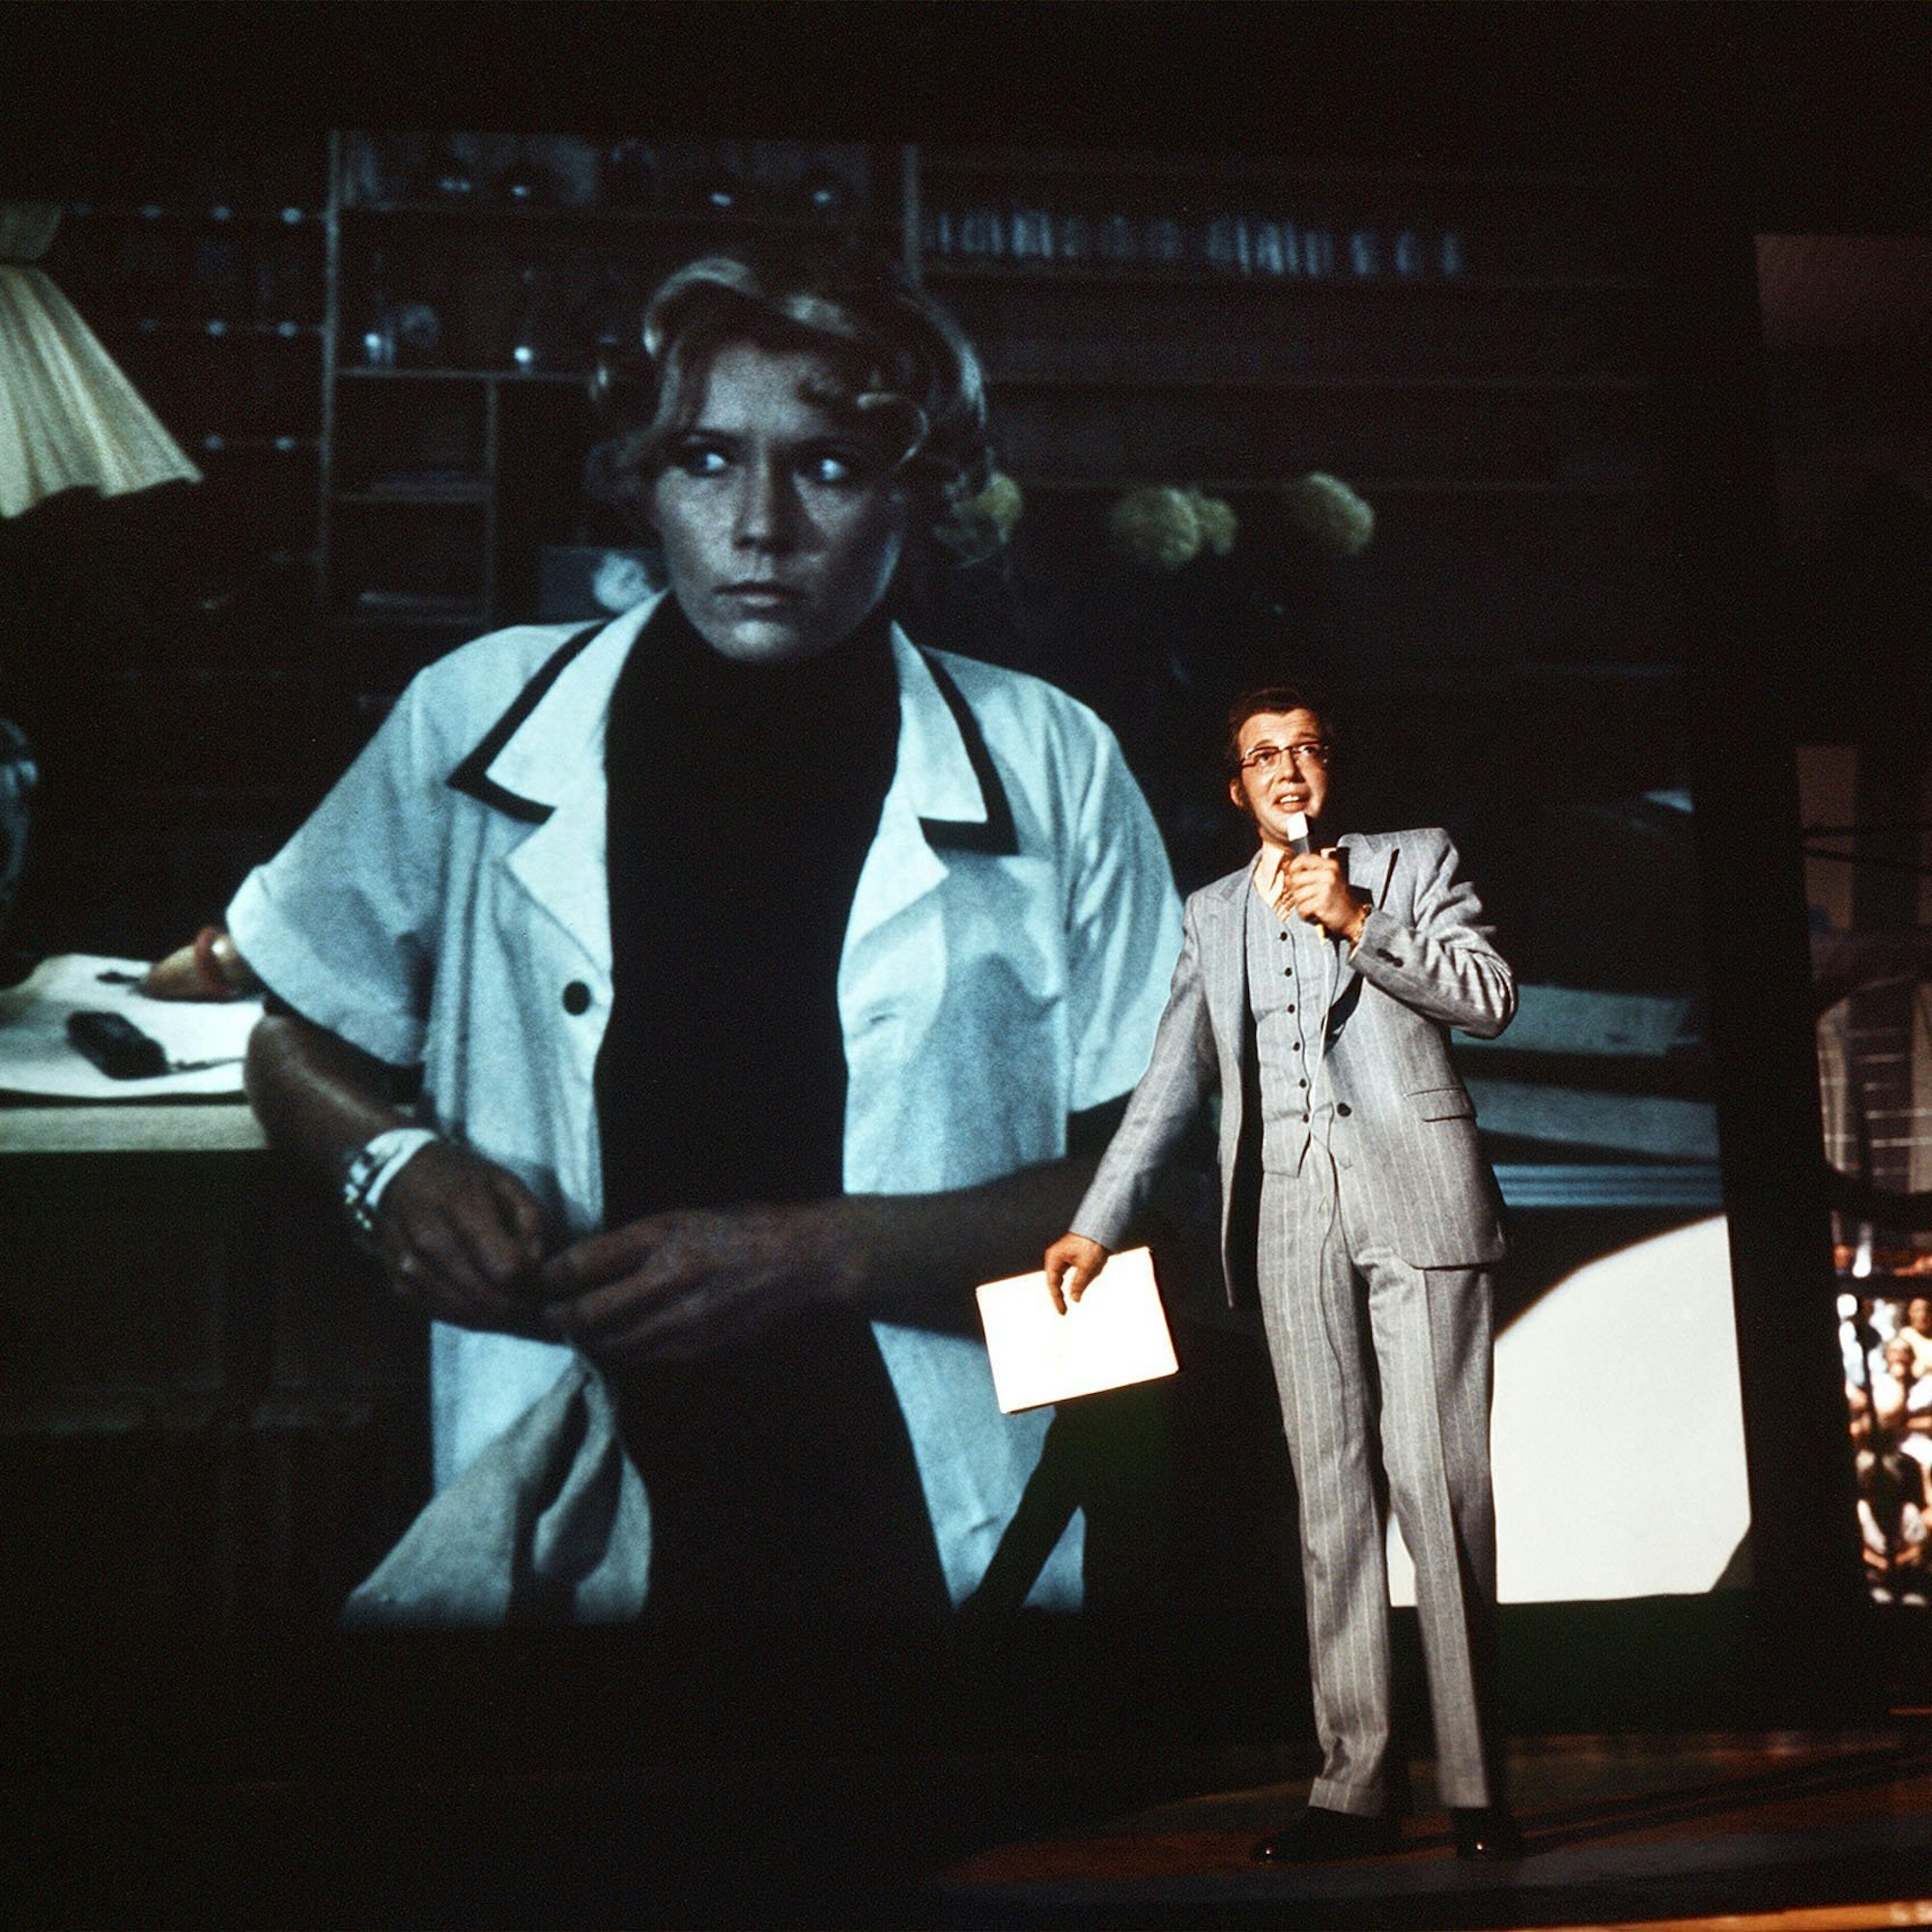 TV-Film „Das Millionenspiel“ (1970): Dieter Thomas Heck als Moderator Tilo Uhlenhorst im Studio spricht mit einer Hotelangestellten (auf der Videowand im Hintergrund)